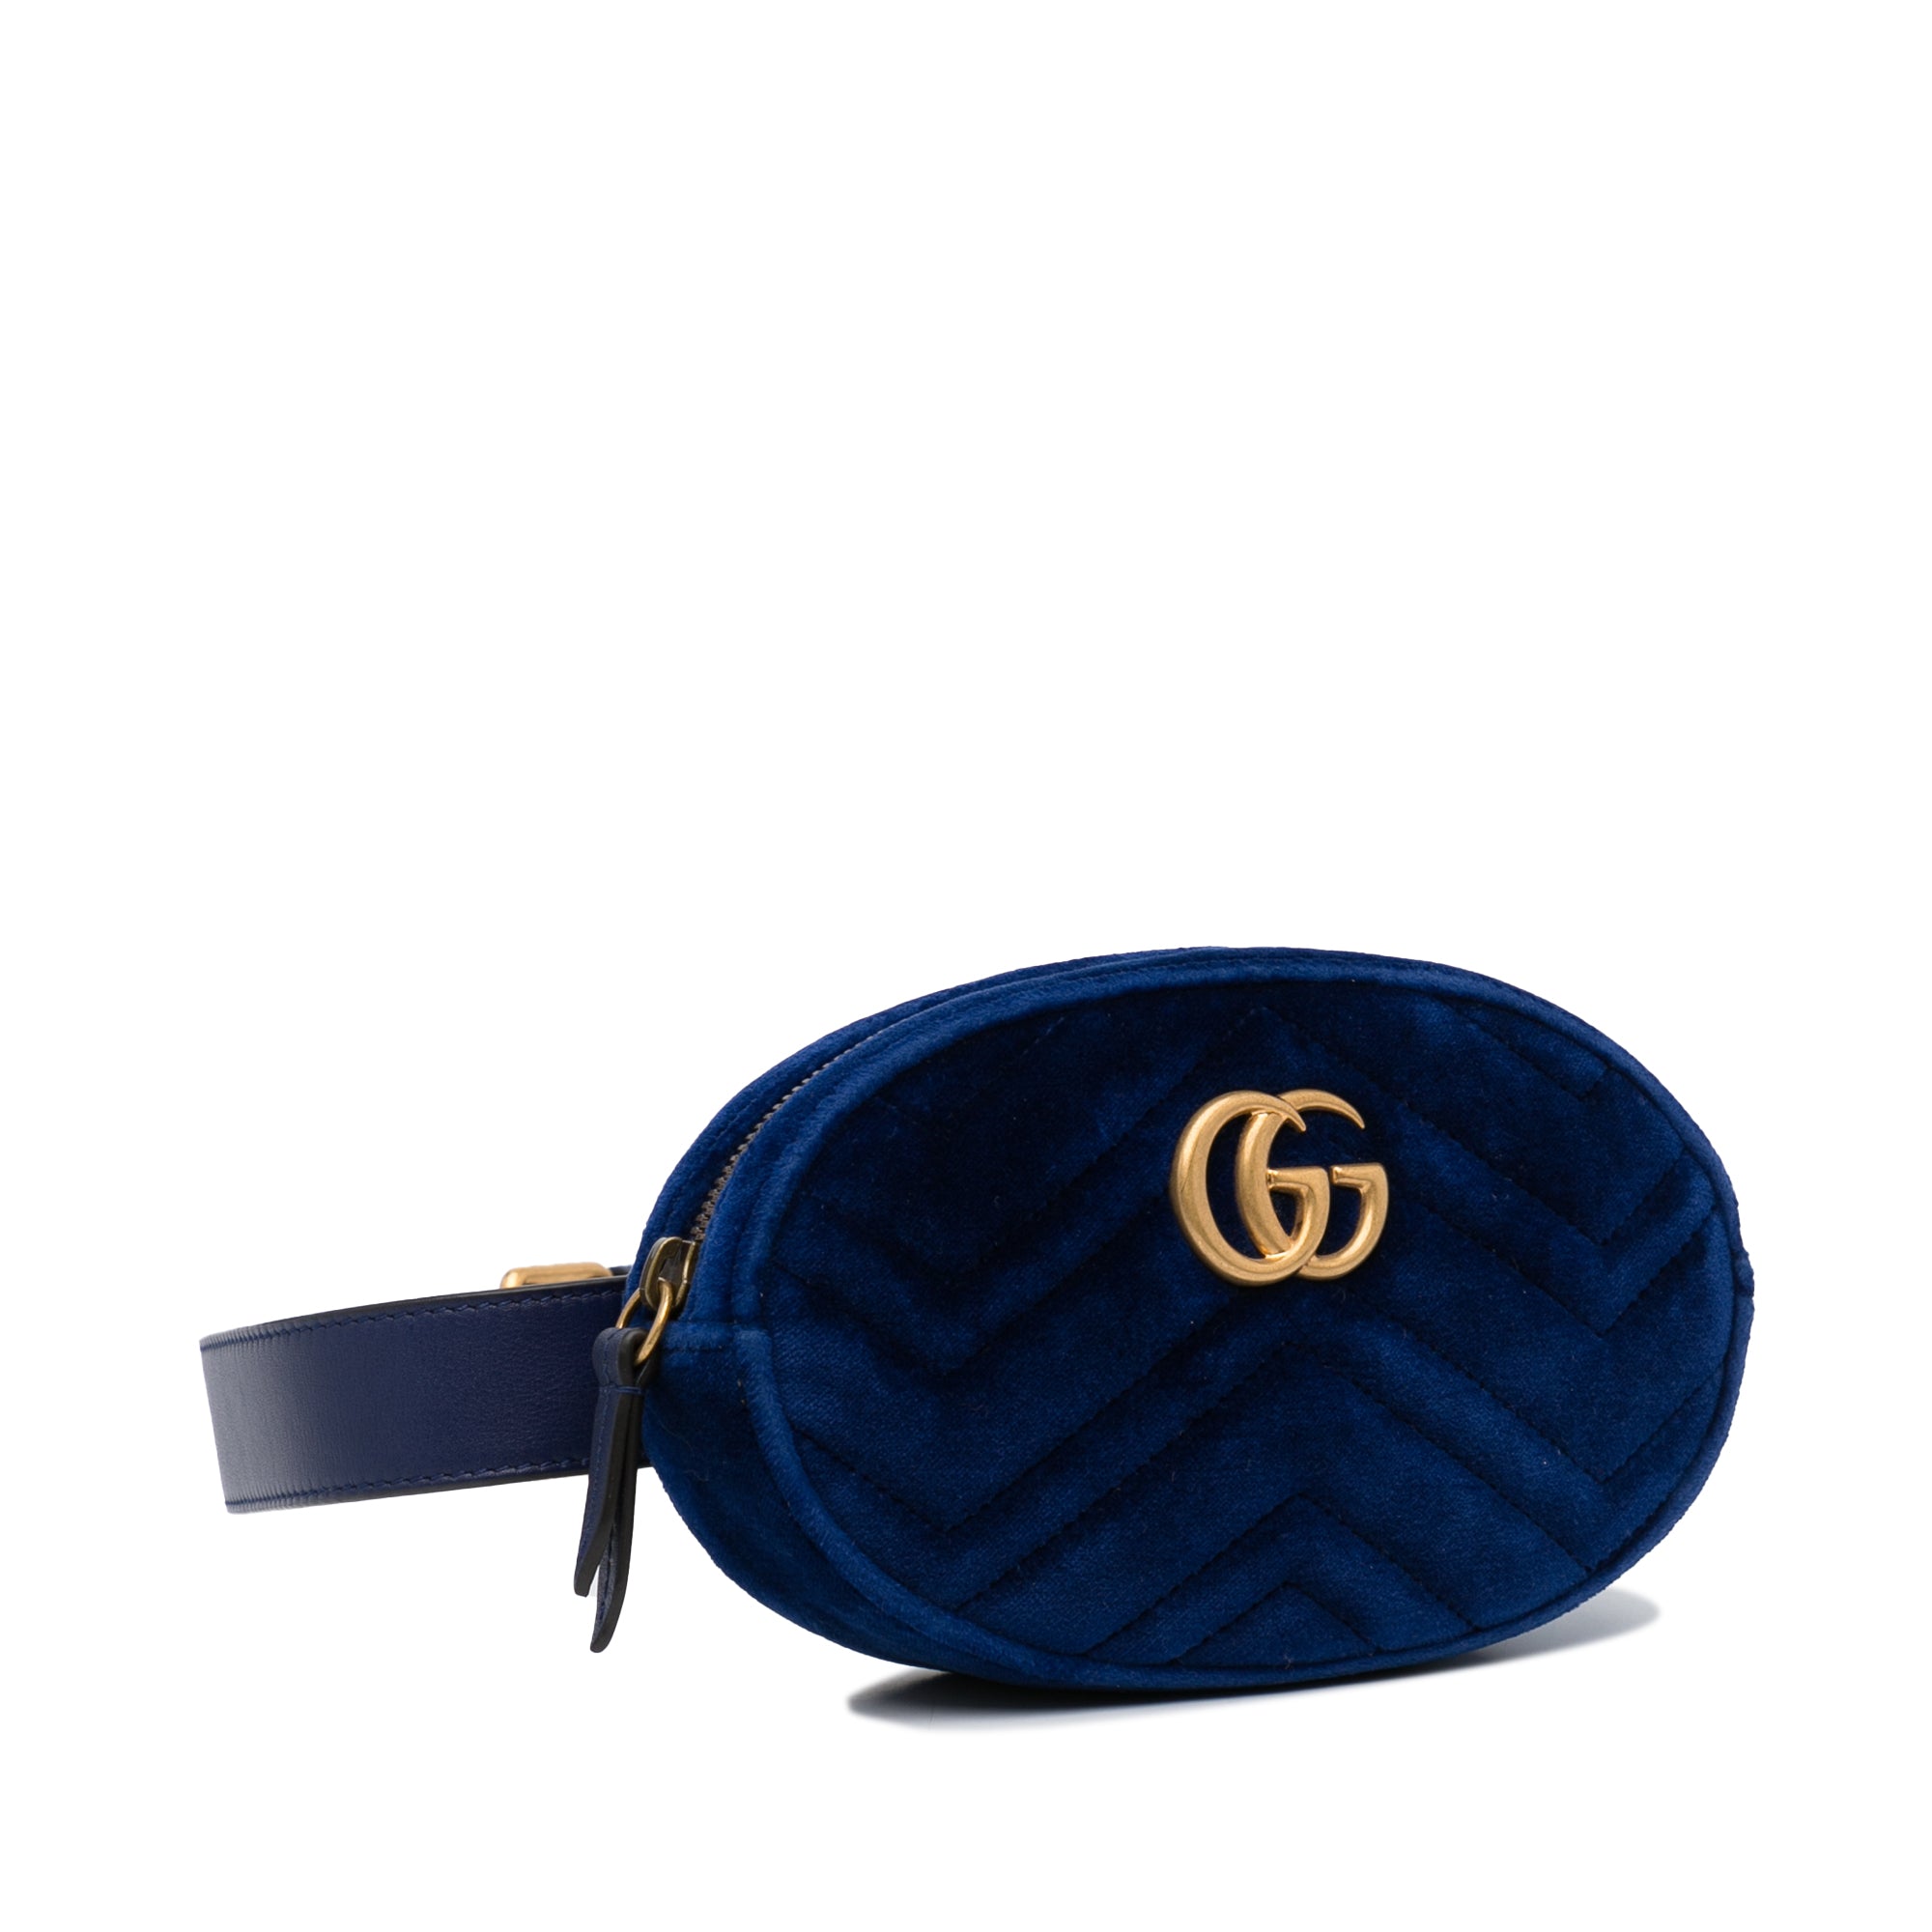 Gucci - Authenticated GG Marmont Handbag - Velvet Black Plain for Women, Never Worn